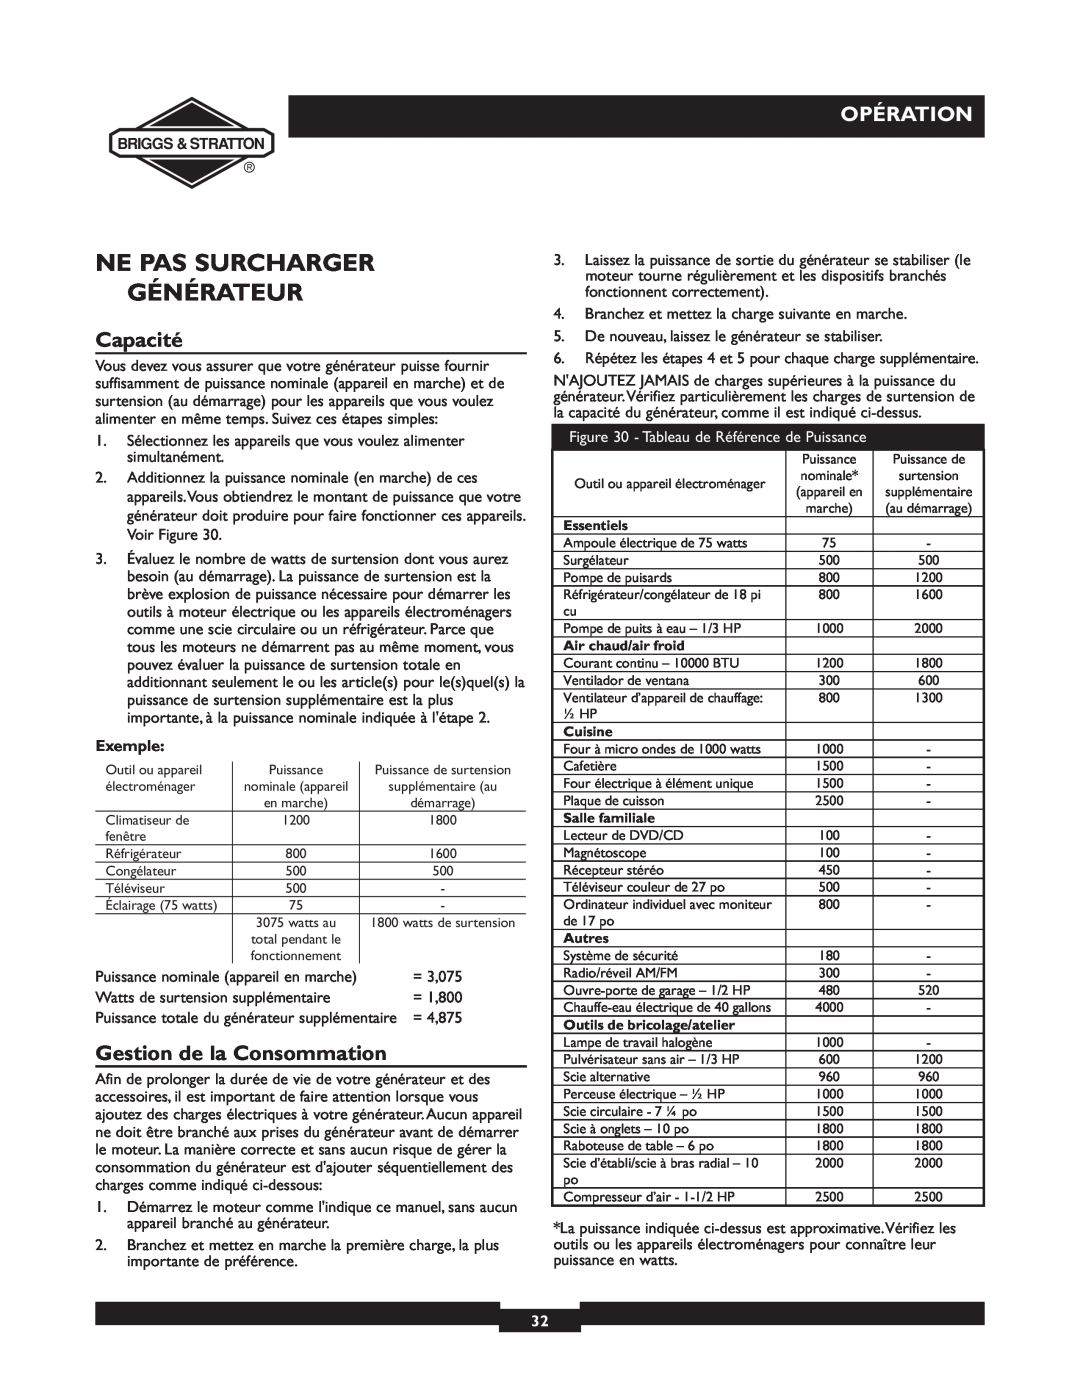 Briggs & Stratton 01894-1 manual Ne Pas Surcharger Générateur, Capacité, Gestion de la Consommation, Opération, Exemple 